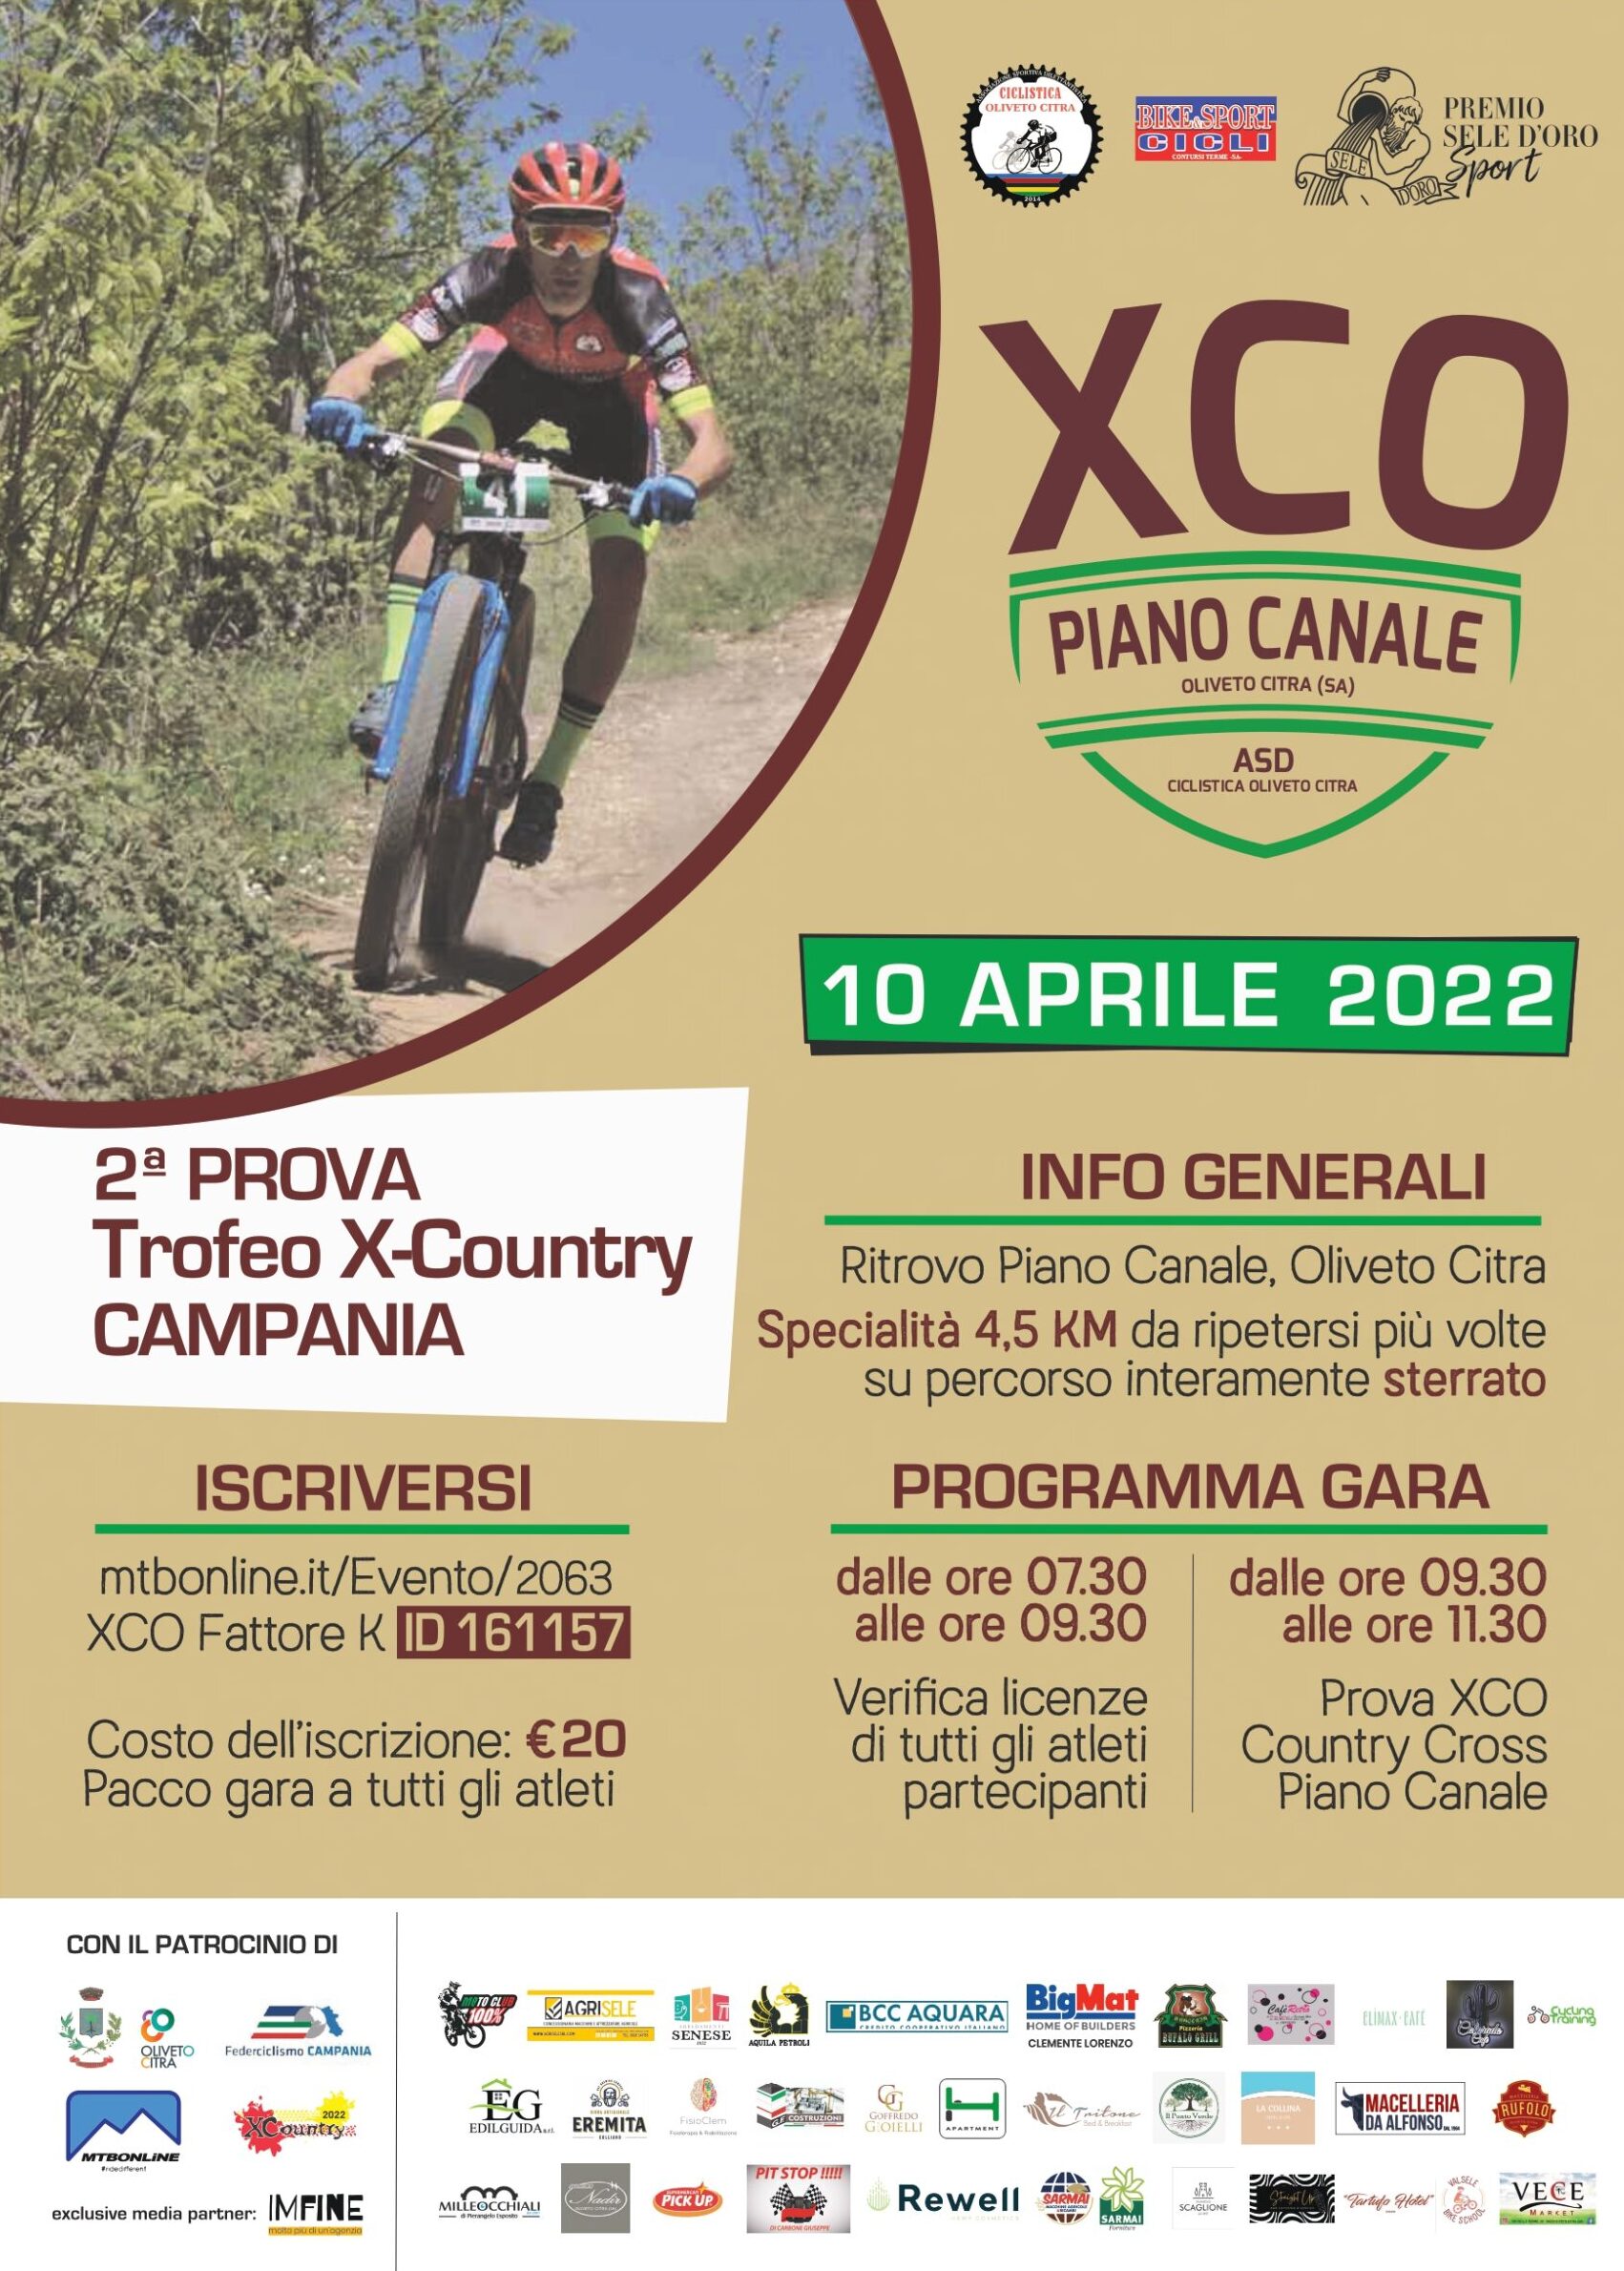 Mountain Bike, XC Piano Canale locandina